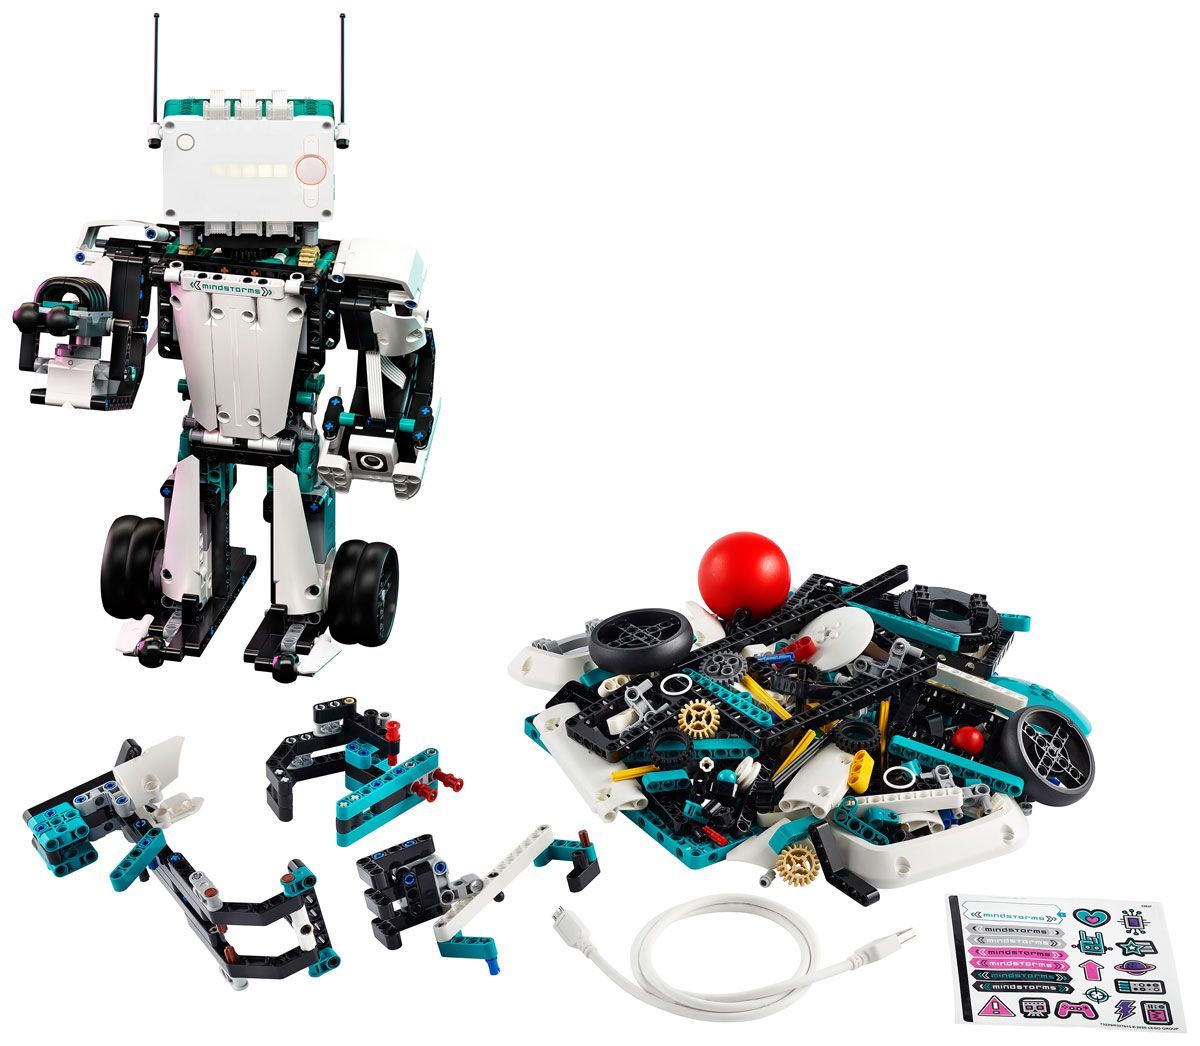 LEGO 51515 Mindstorms Robot Inventor 5-in-1 Set. (Foto: LEGO)